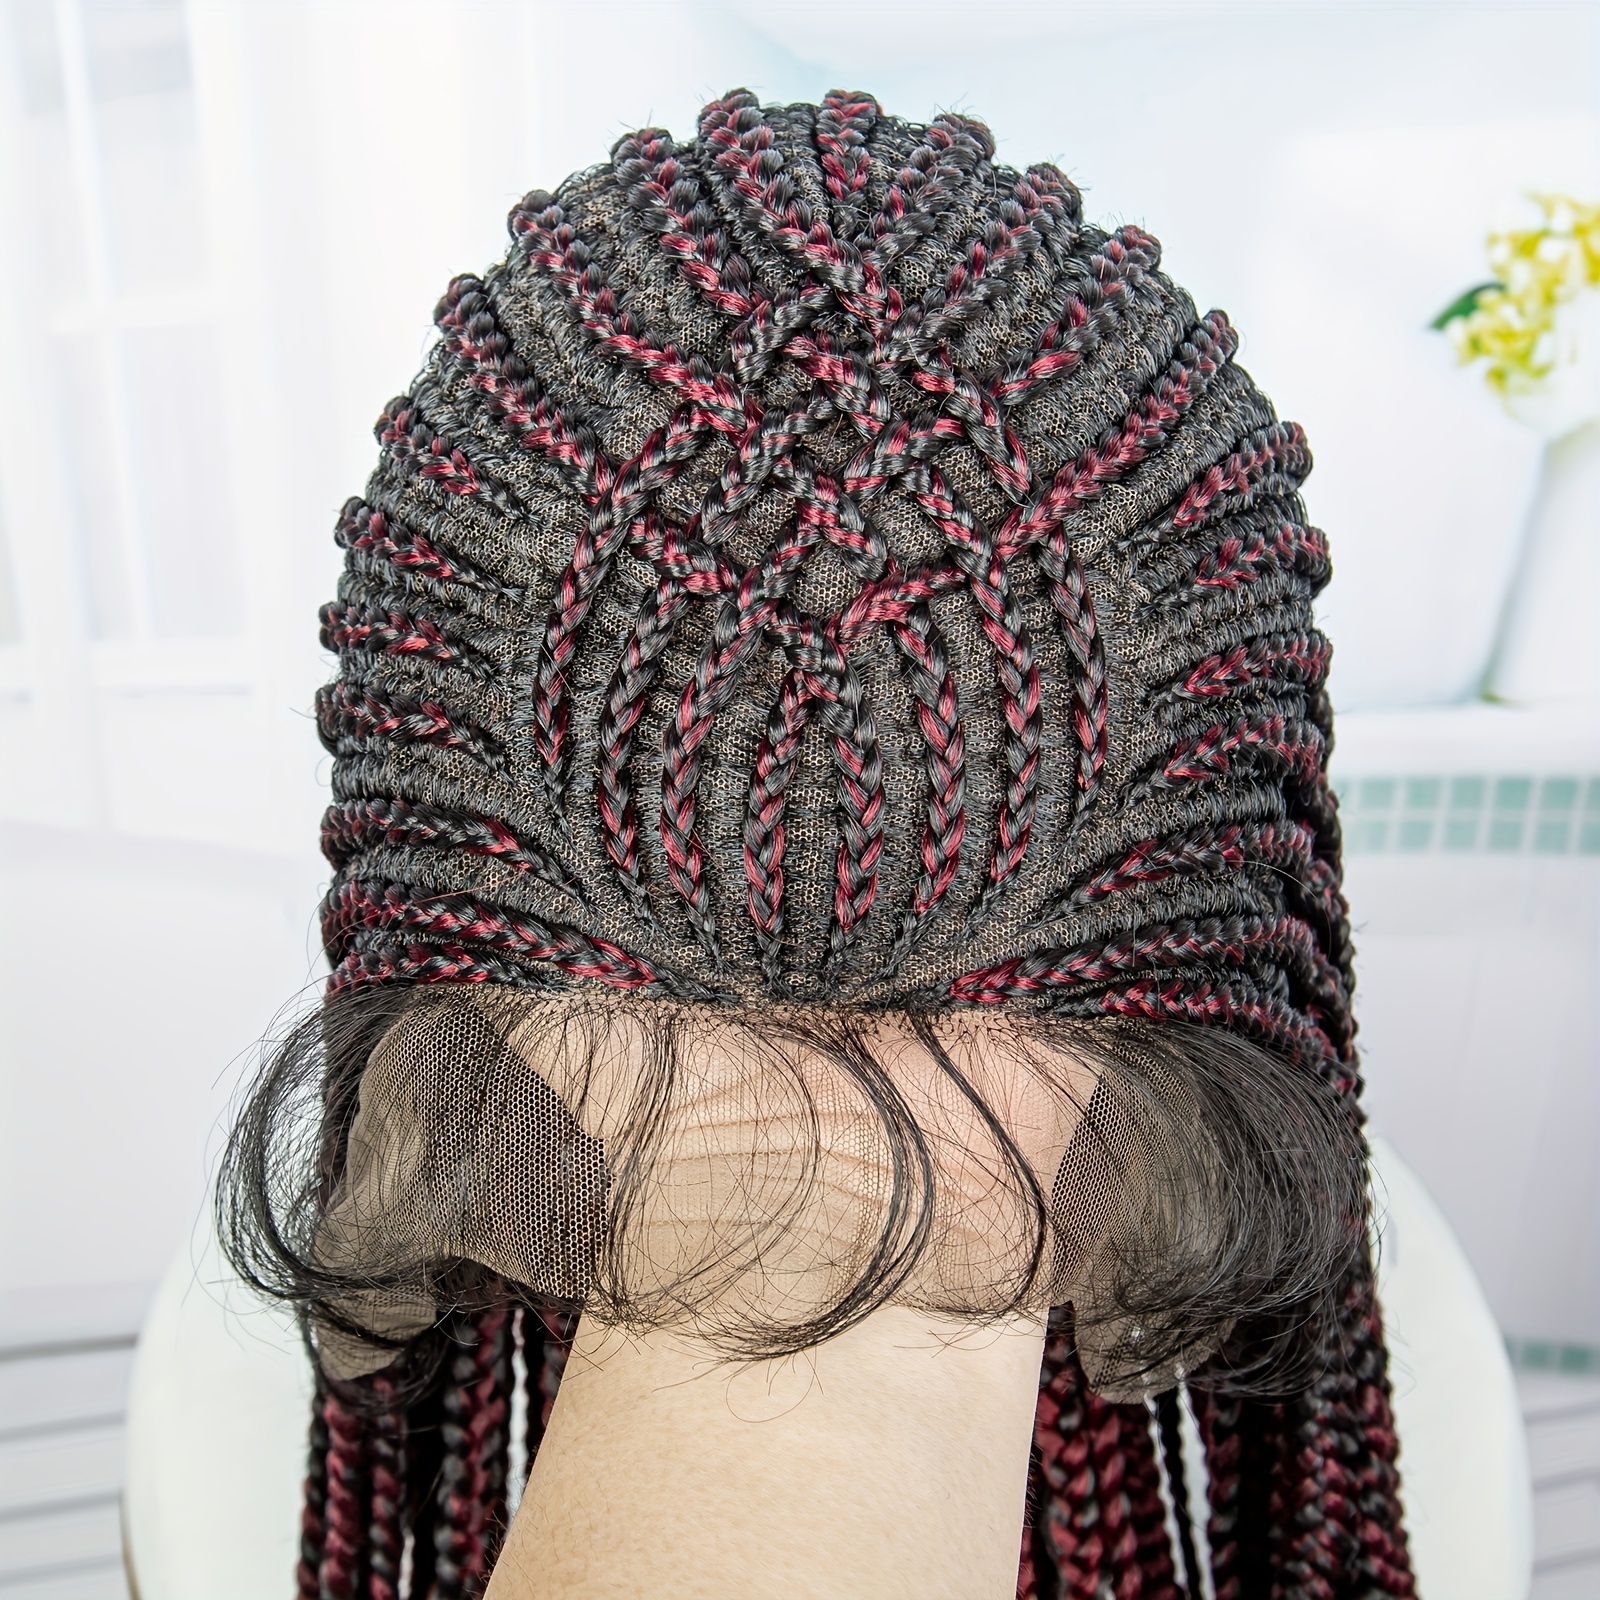 Beaded Frontal Ghana weaving braided wig